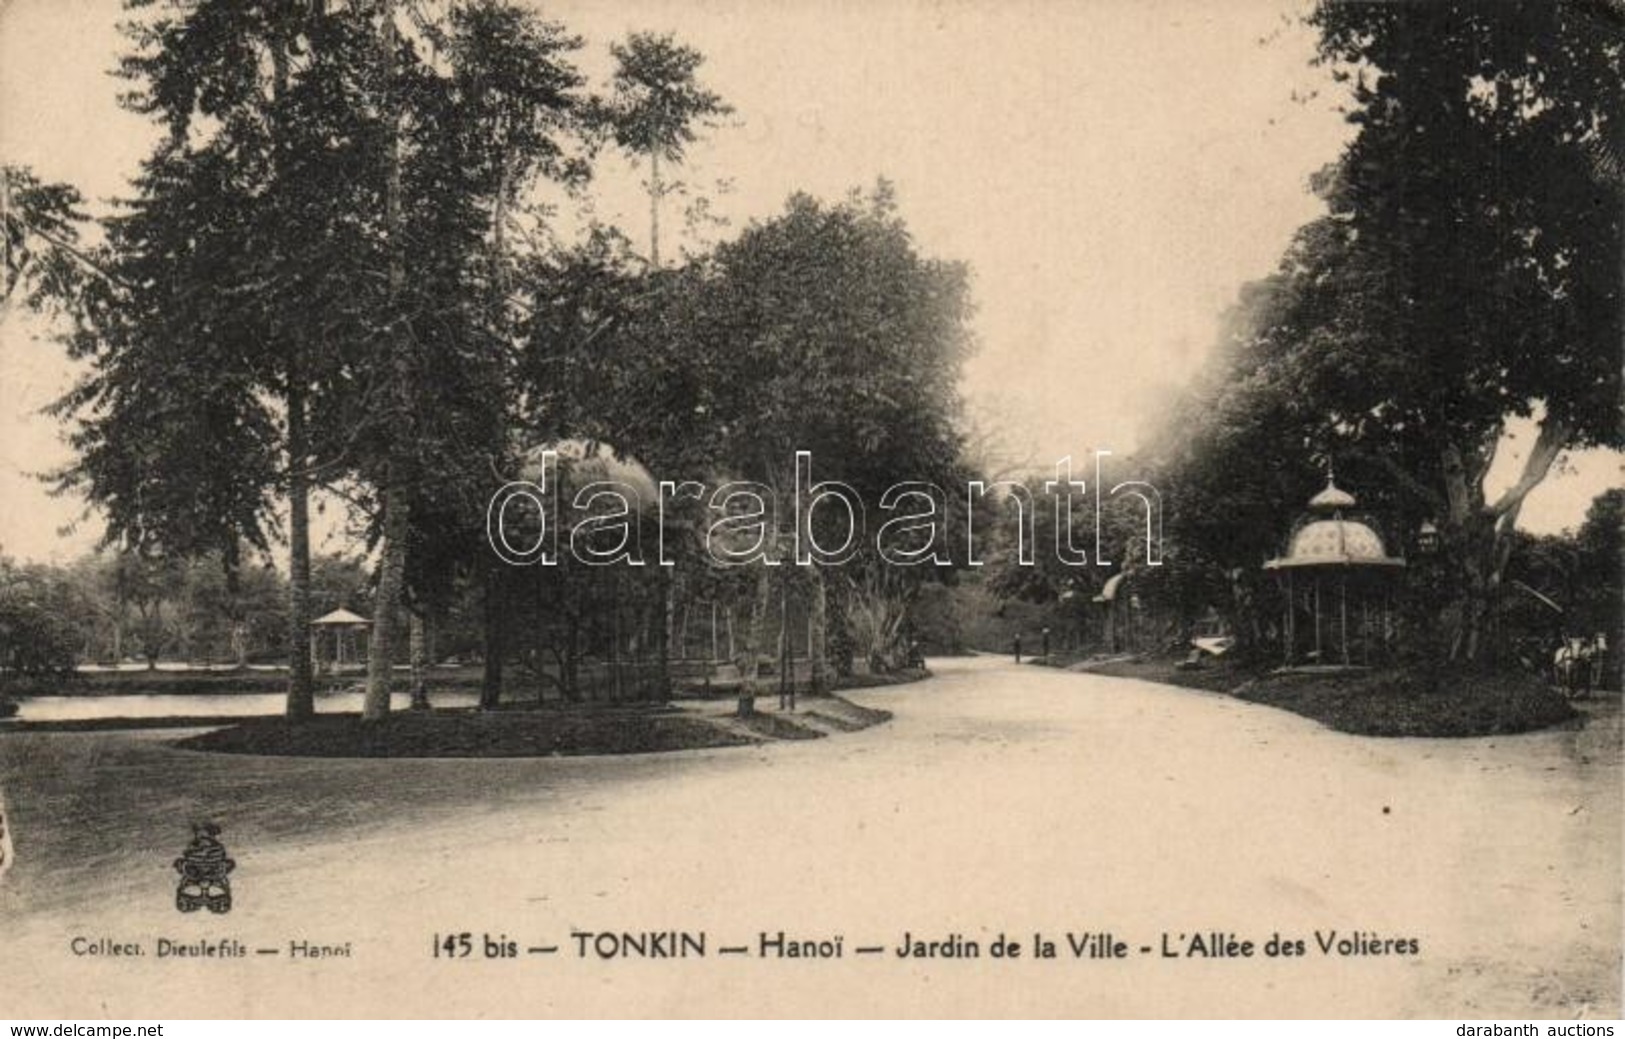 ** T2/T3 Tonkin, Hanoi; Jardin De La Ville, L'Allée Des Voileres / Garden, Alley - Unclassified